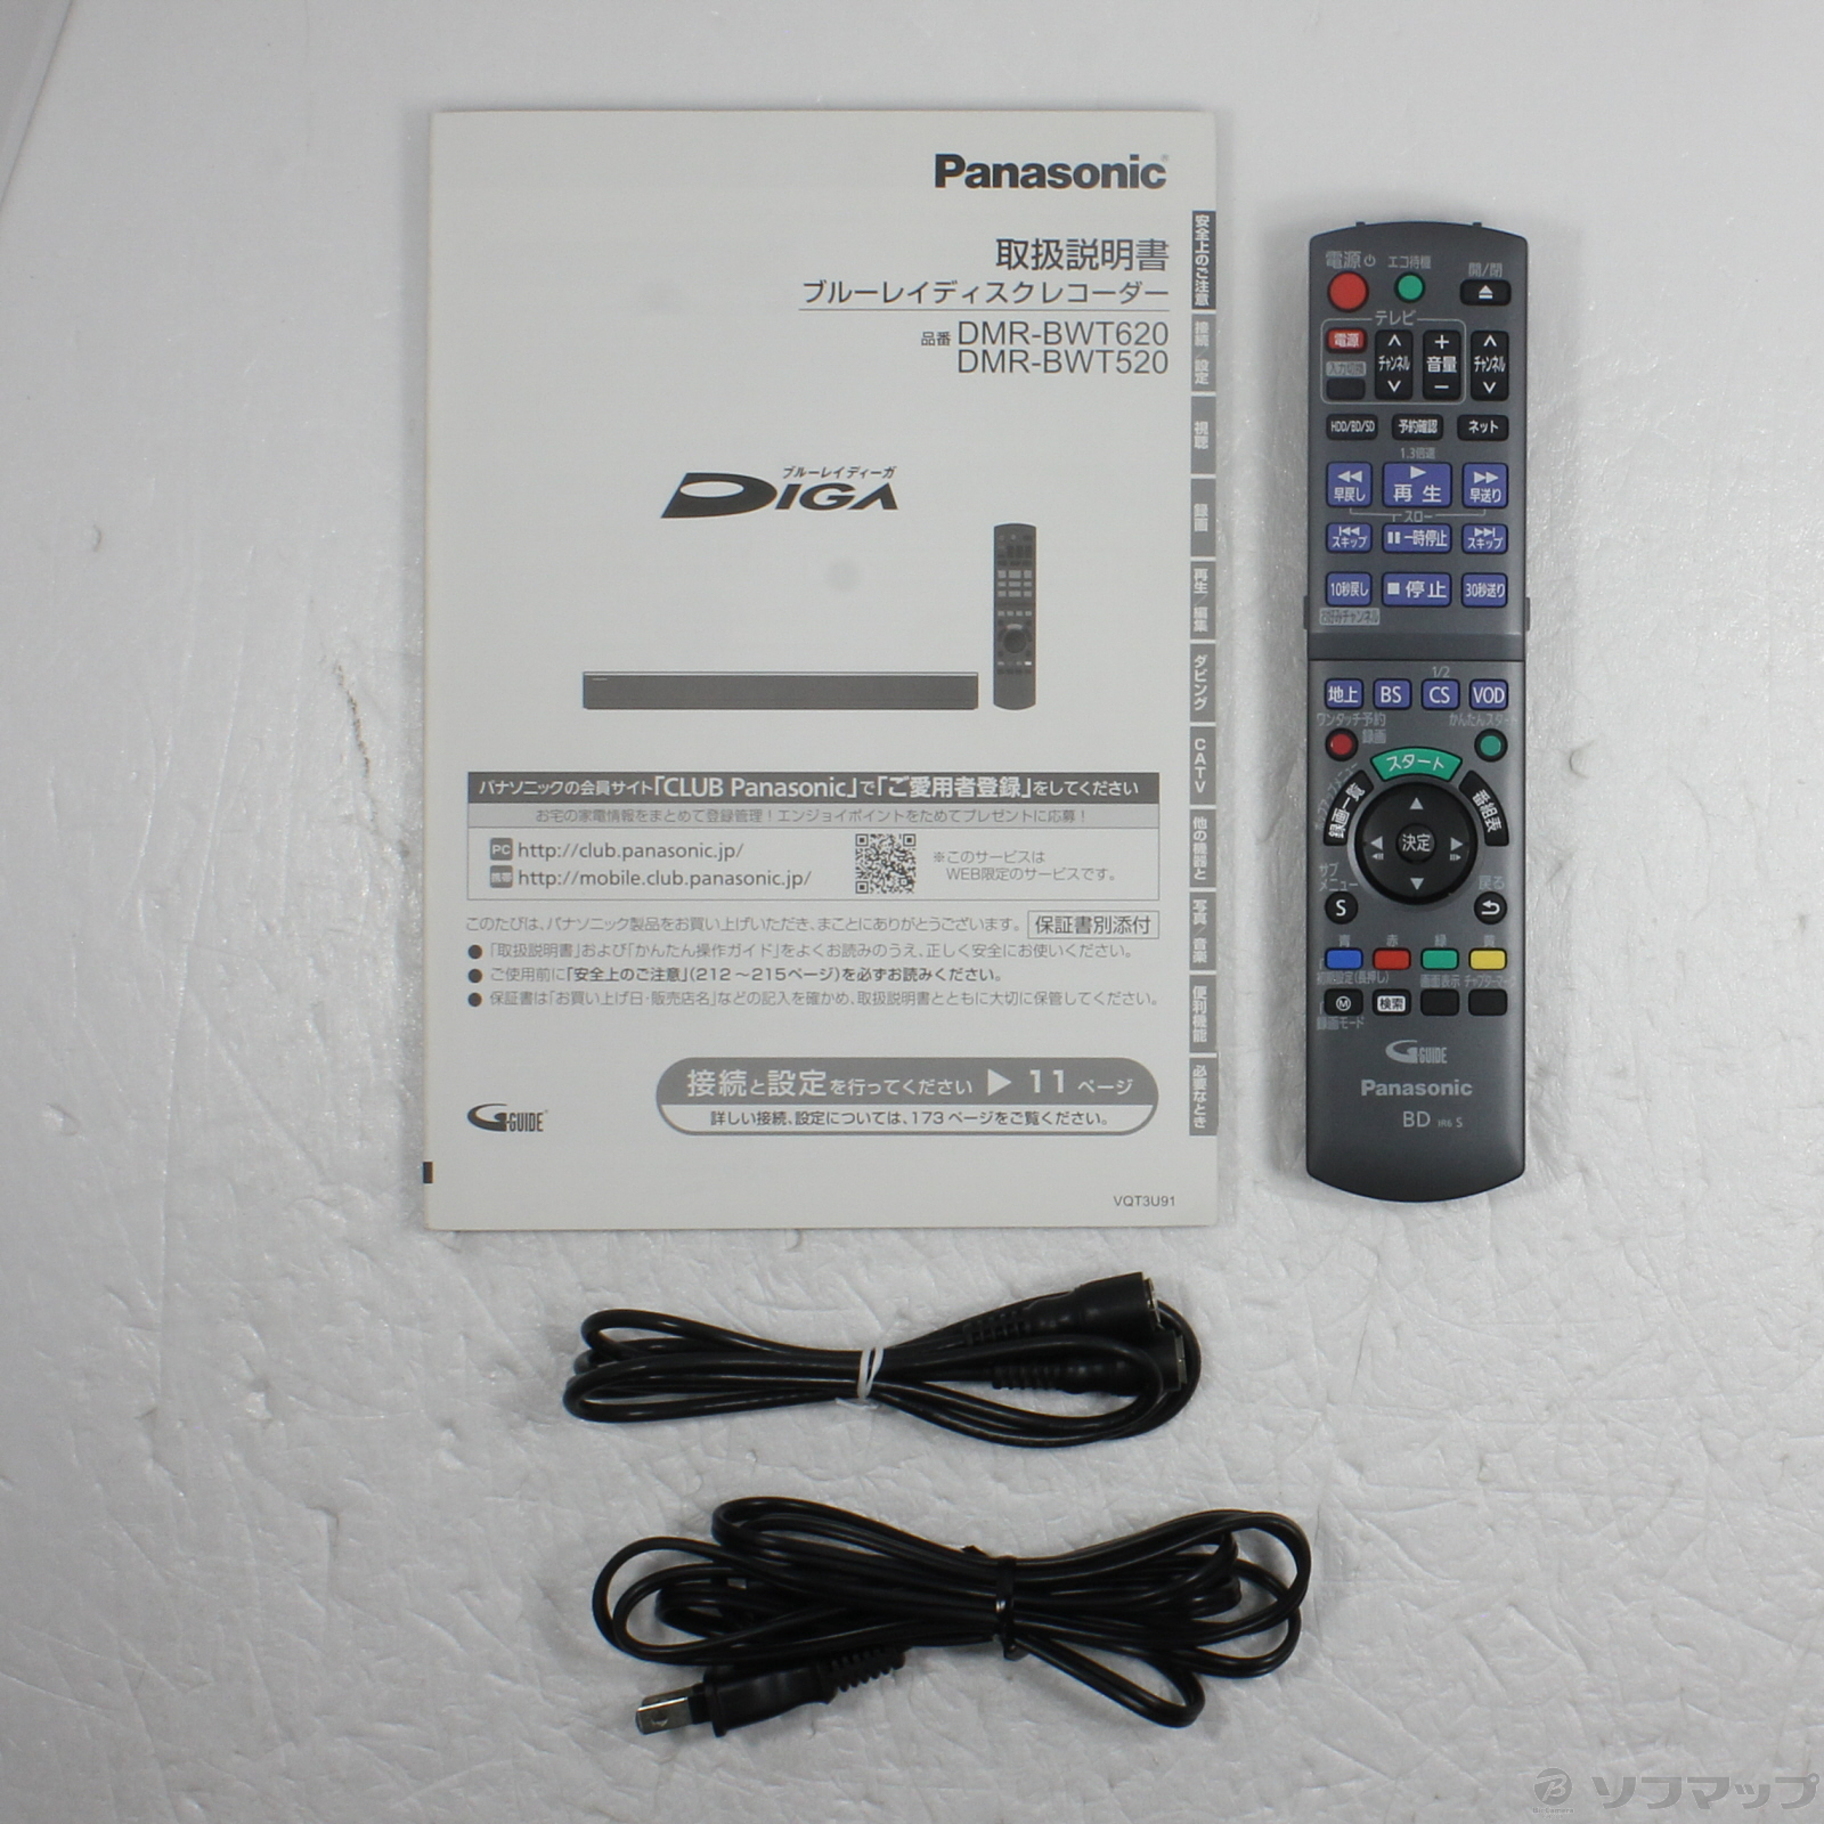 DIGA DMR-BWT620 Panasonic